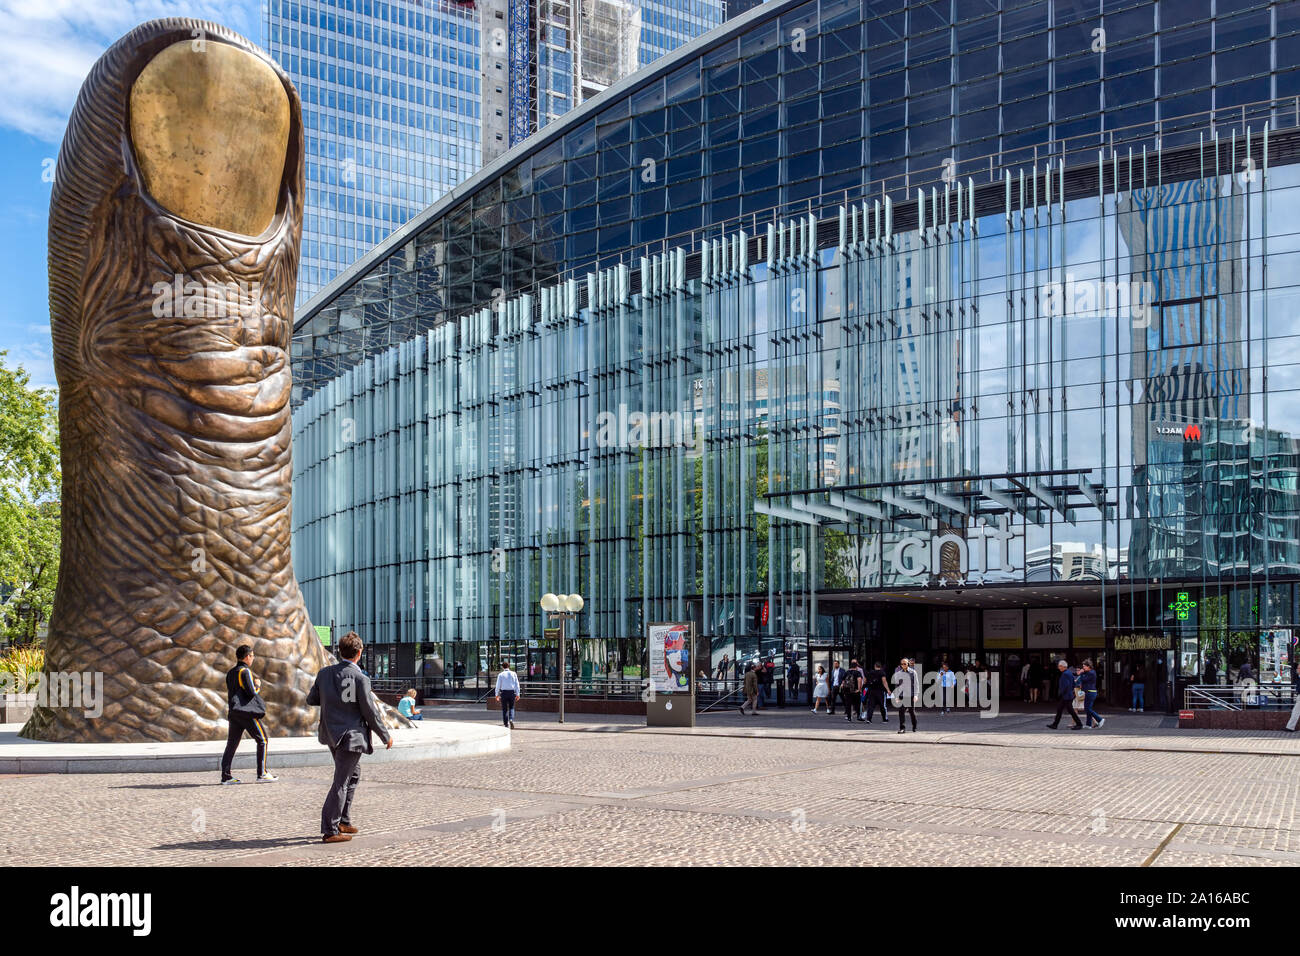 La gigantesque sculpture de doigt à la défense, Paris, France Banque D'Images